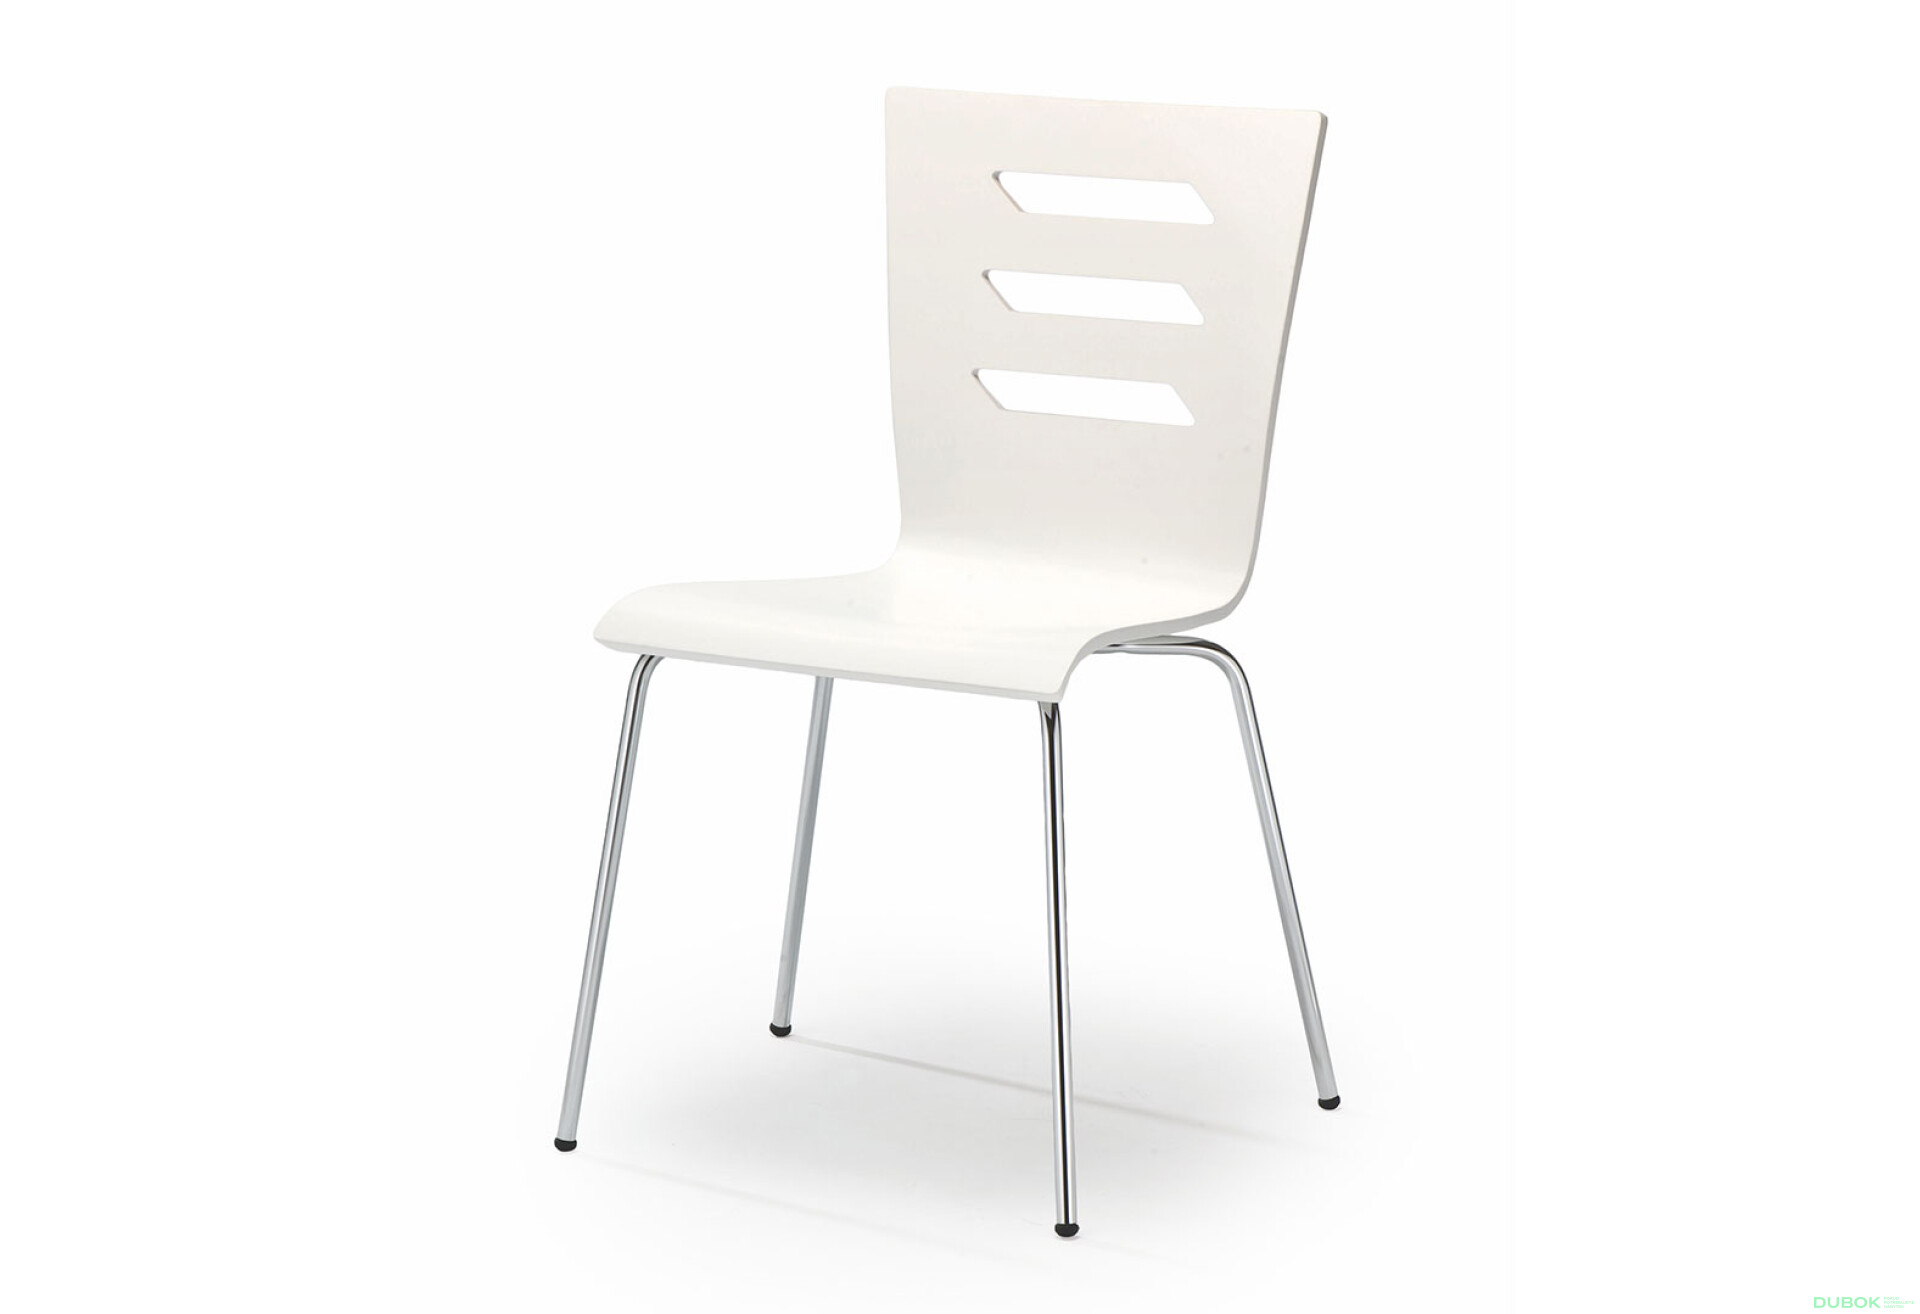 Фото 1 - Židle K155 chrom, bílá ekokůže